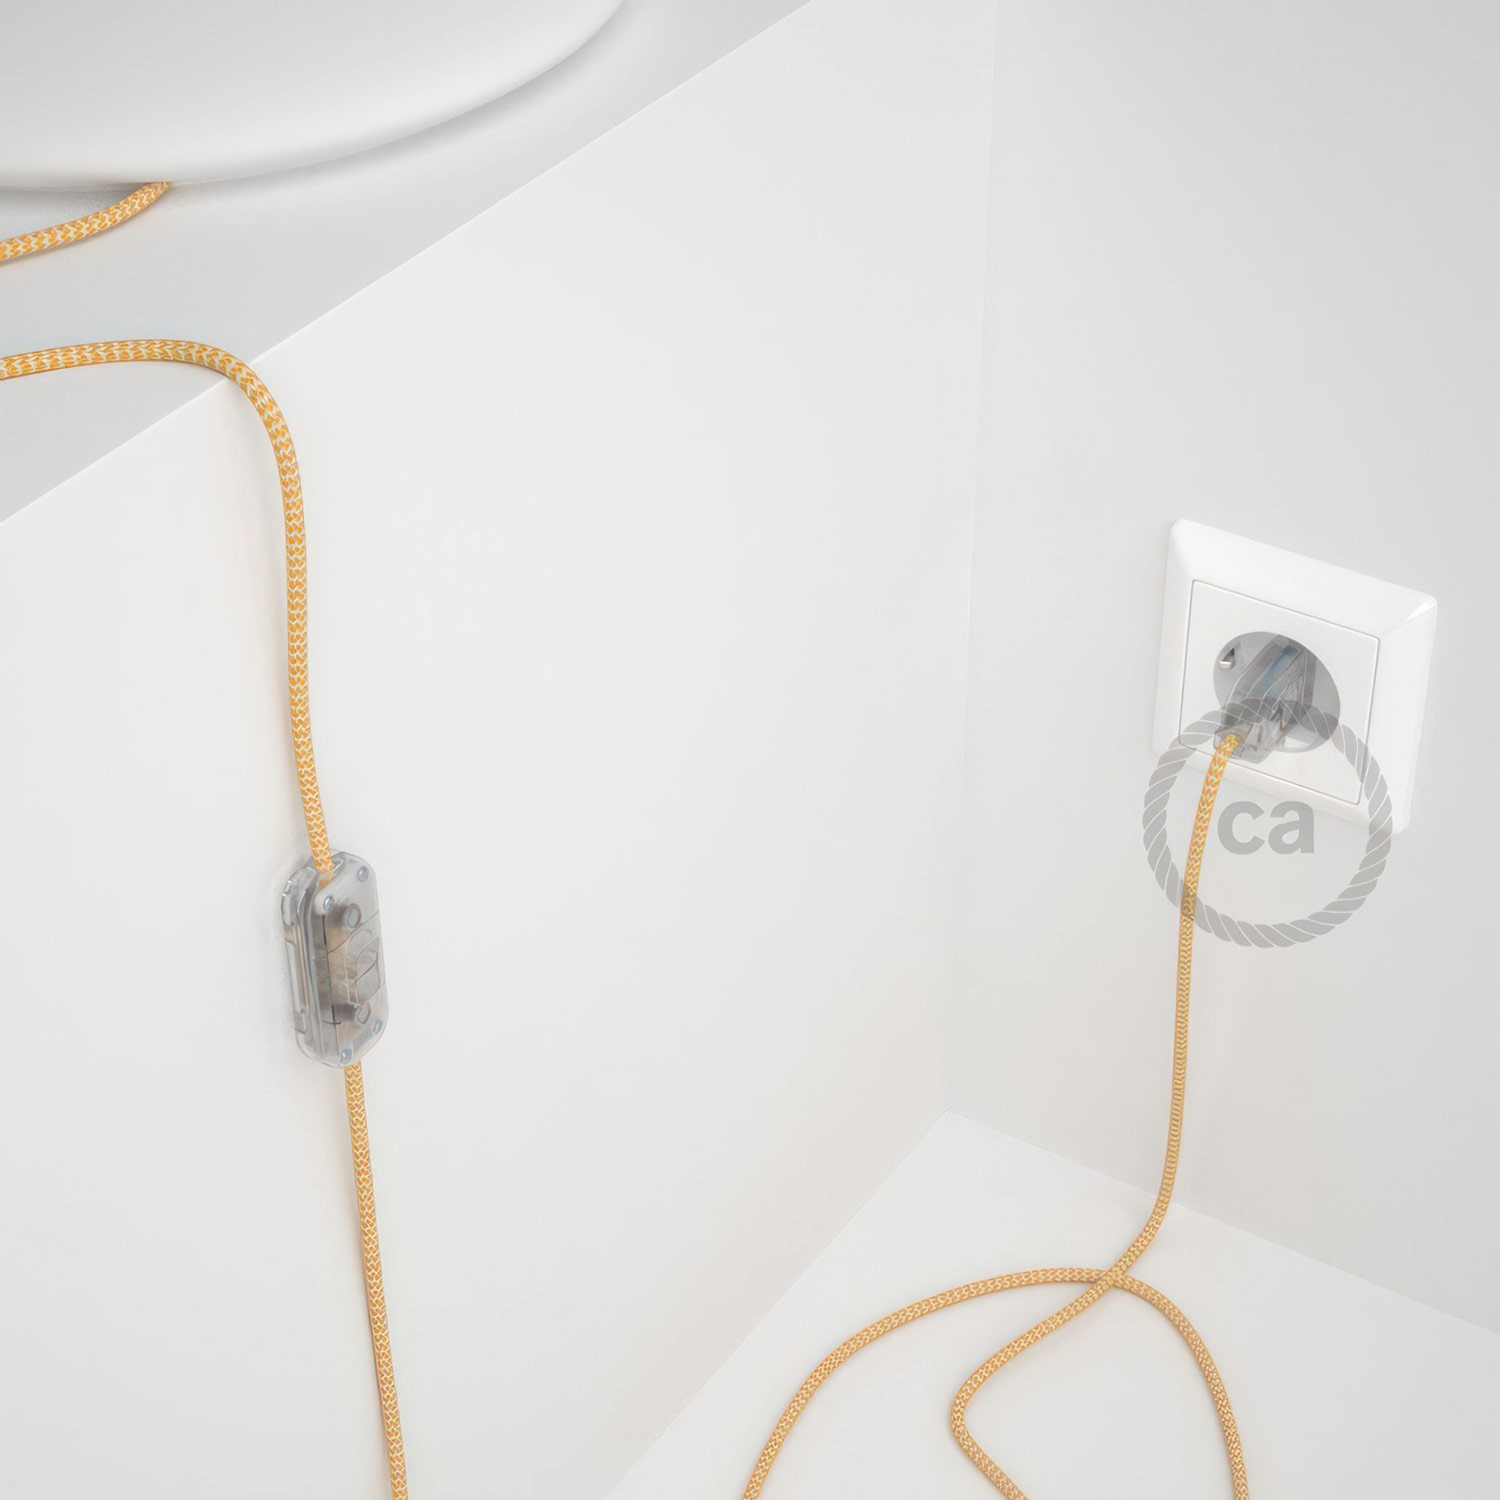 Cableado para lámpara, cable RZ10 Efecto Seda ZigZag Blanco Amarillo 1,8m. Elige tu el color de la clavija y del interruptor!